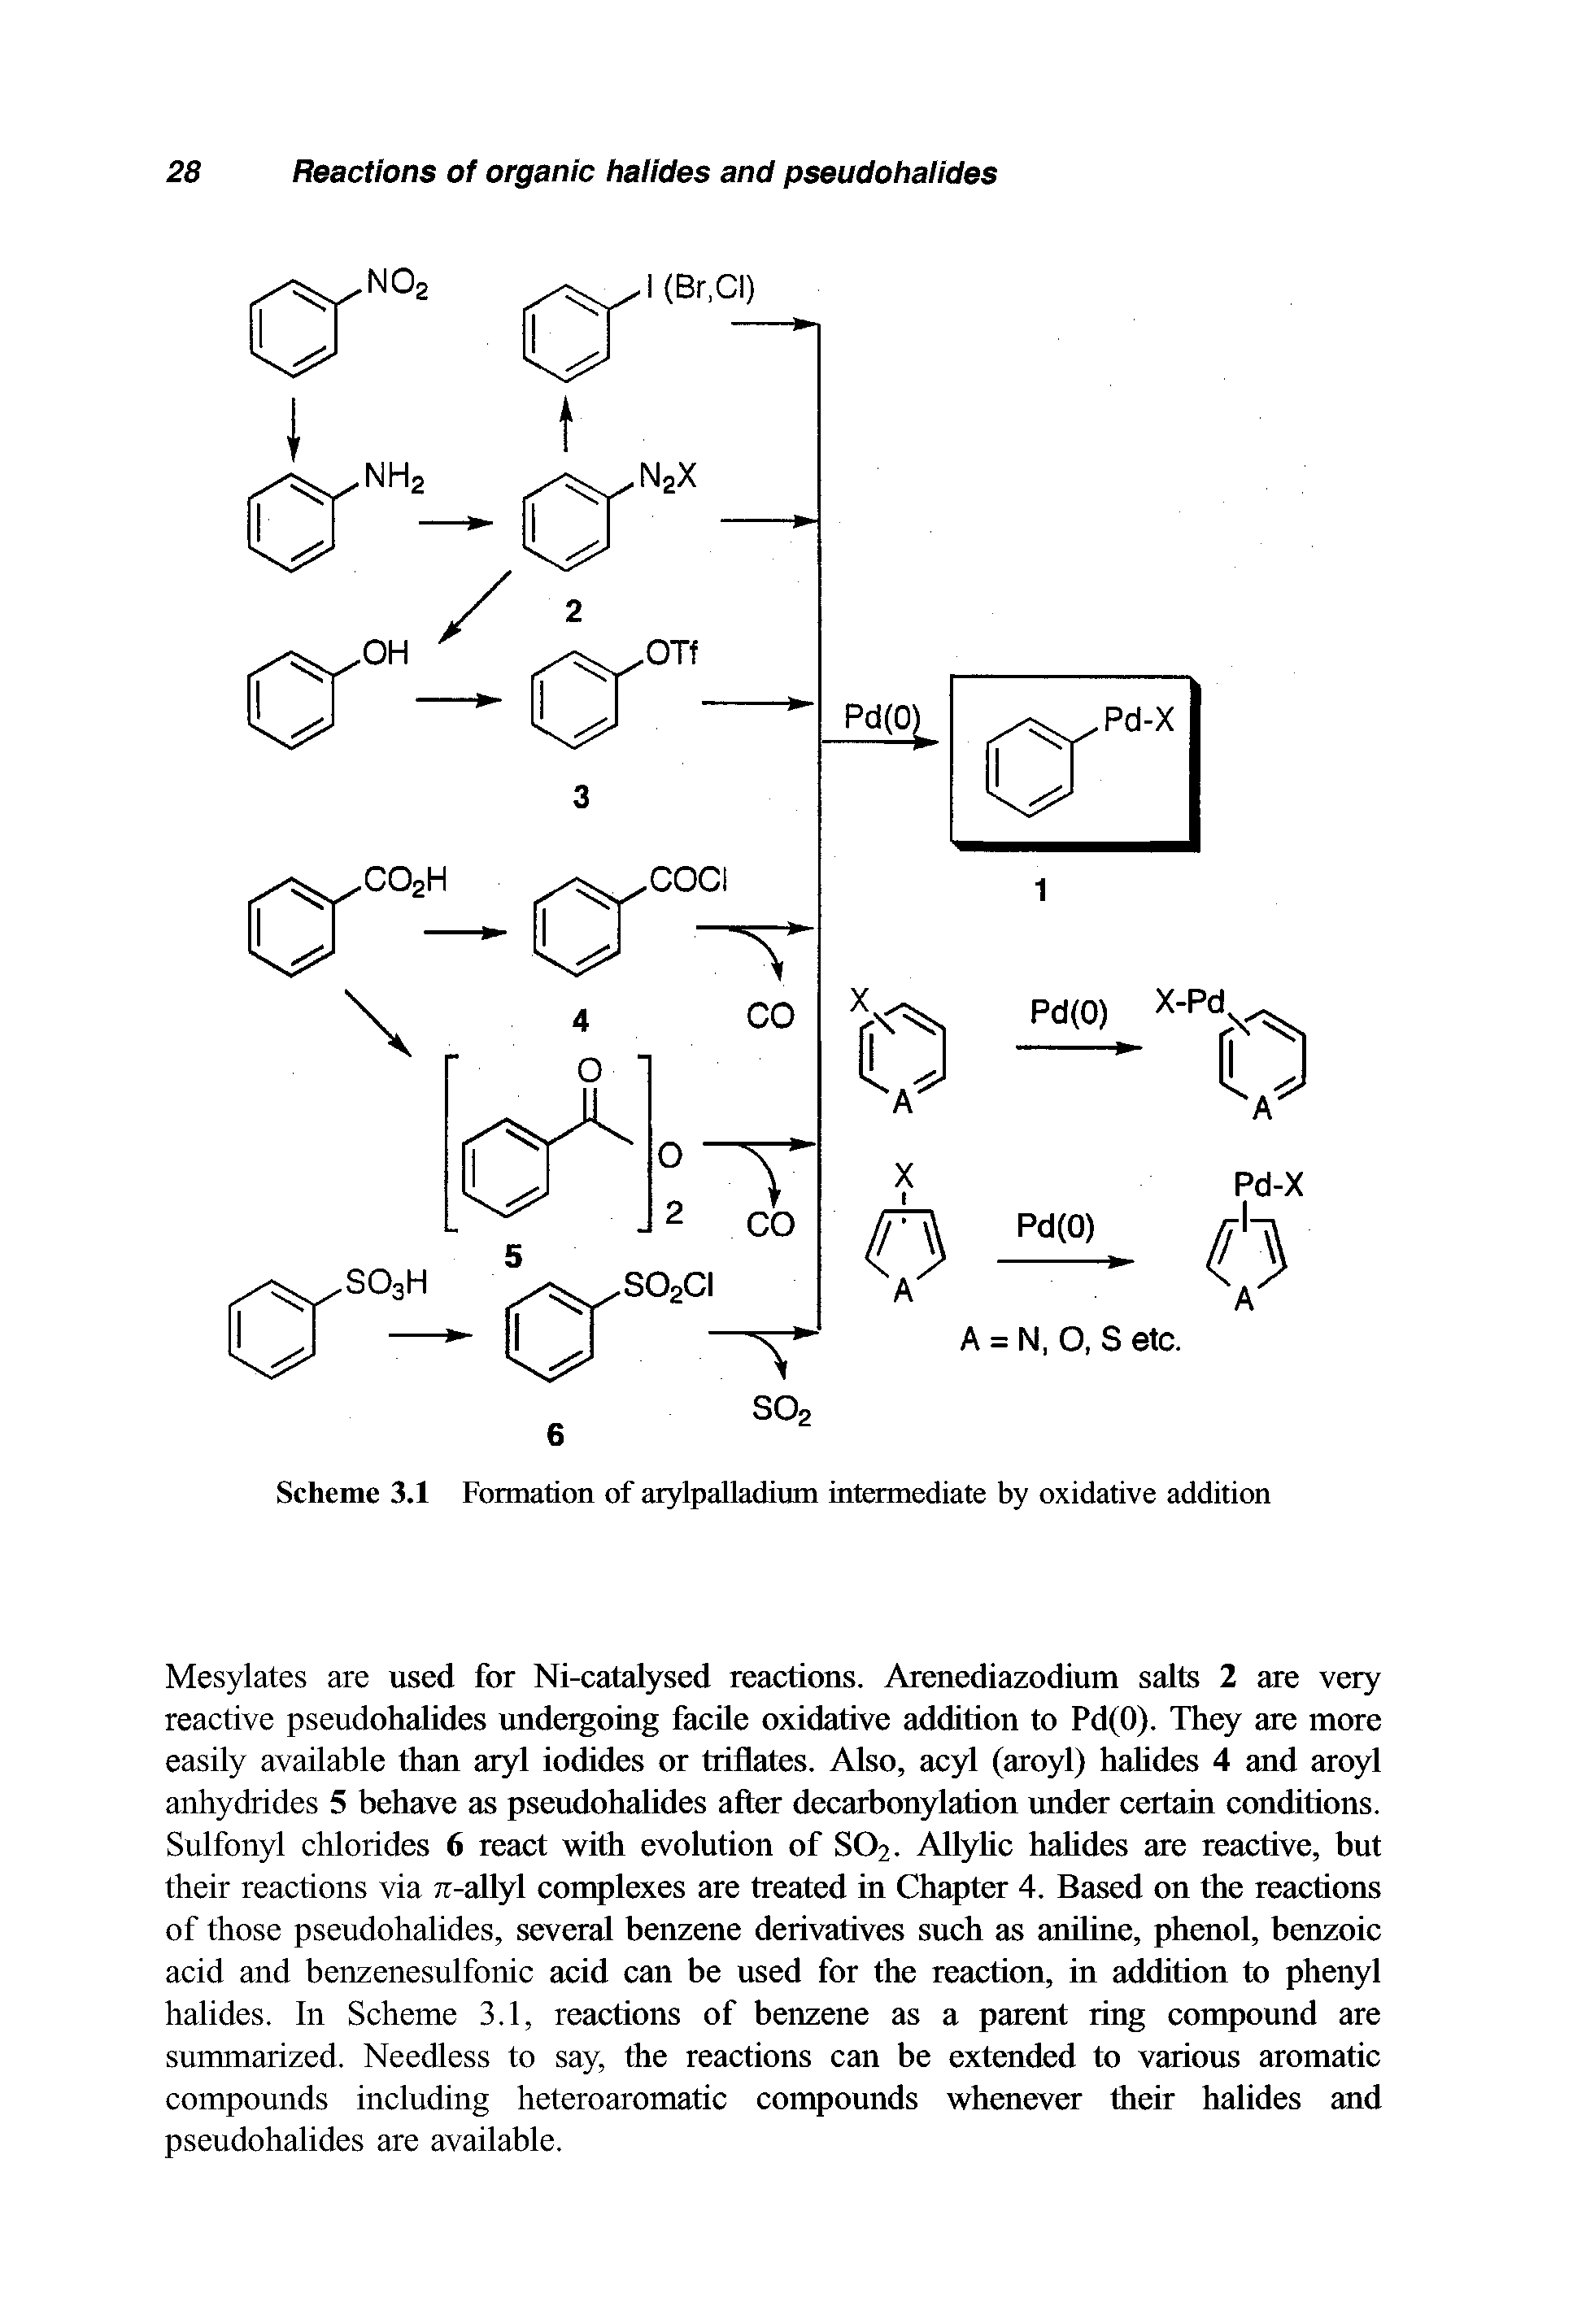 Scheme 3.1 Formation of arylpalladium intermediate by oxidative addition...